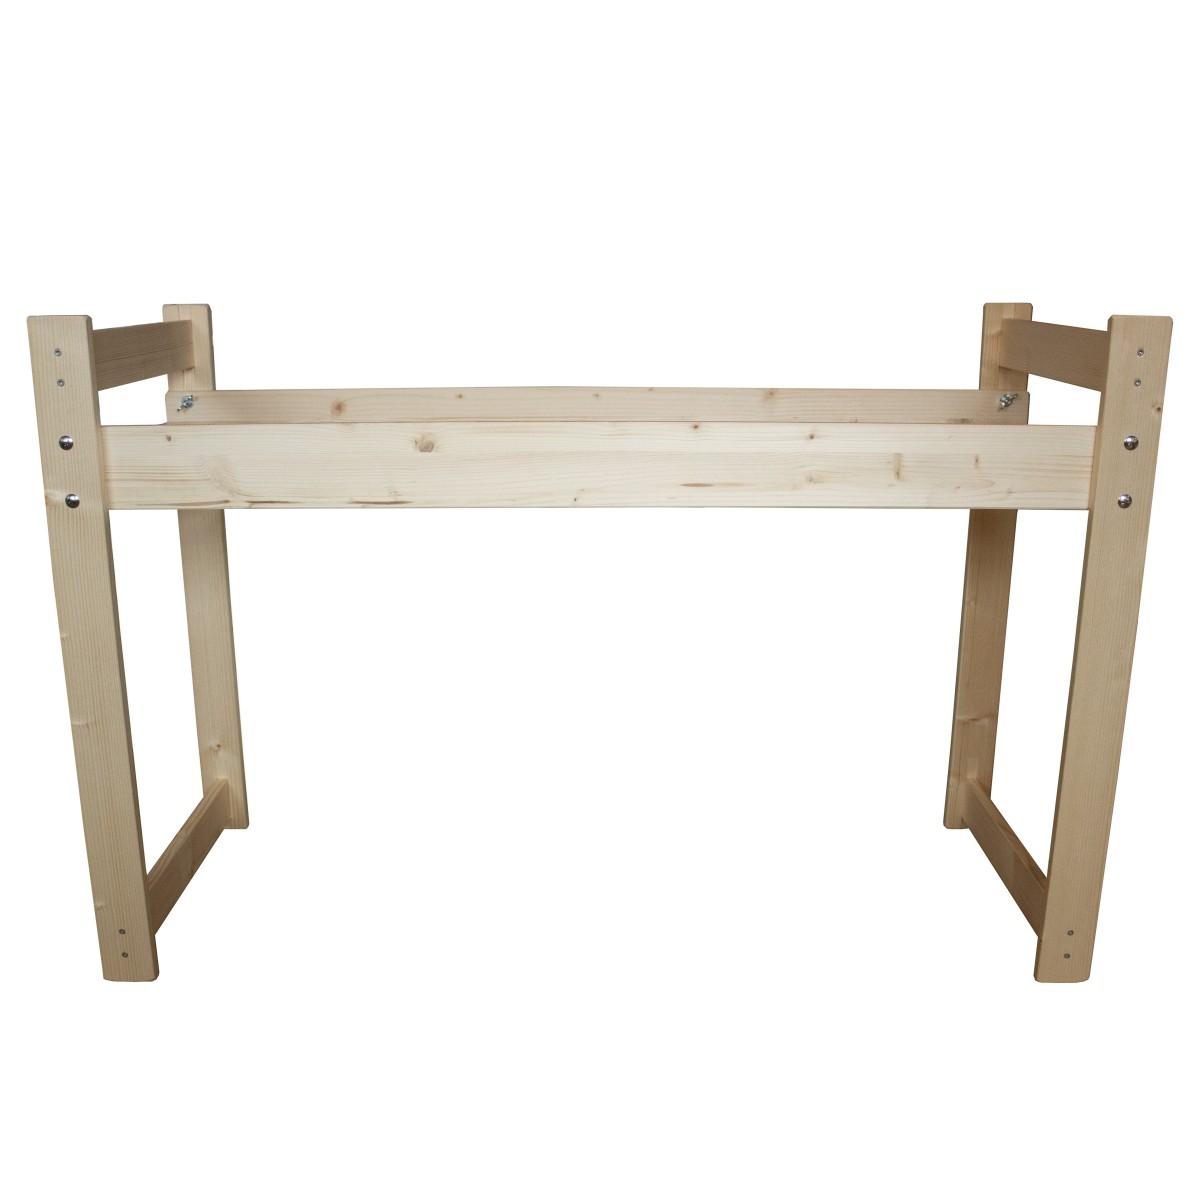 Table de support pour jeu traditionnel en bois Table de support en bois de hêtre pour jeu géant traditionnel en bois. Table de s